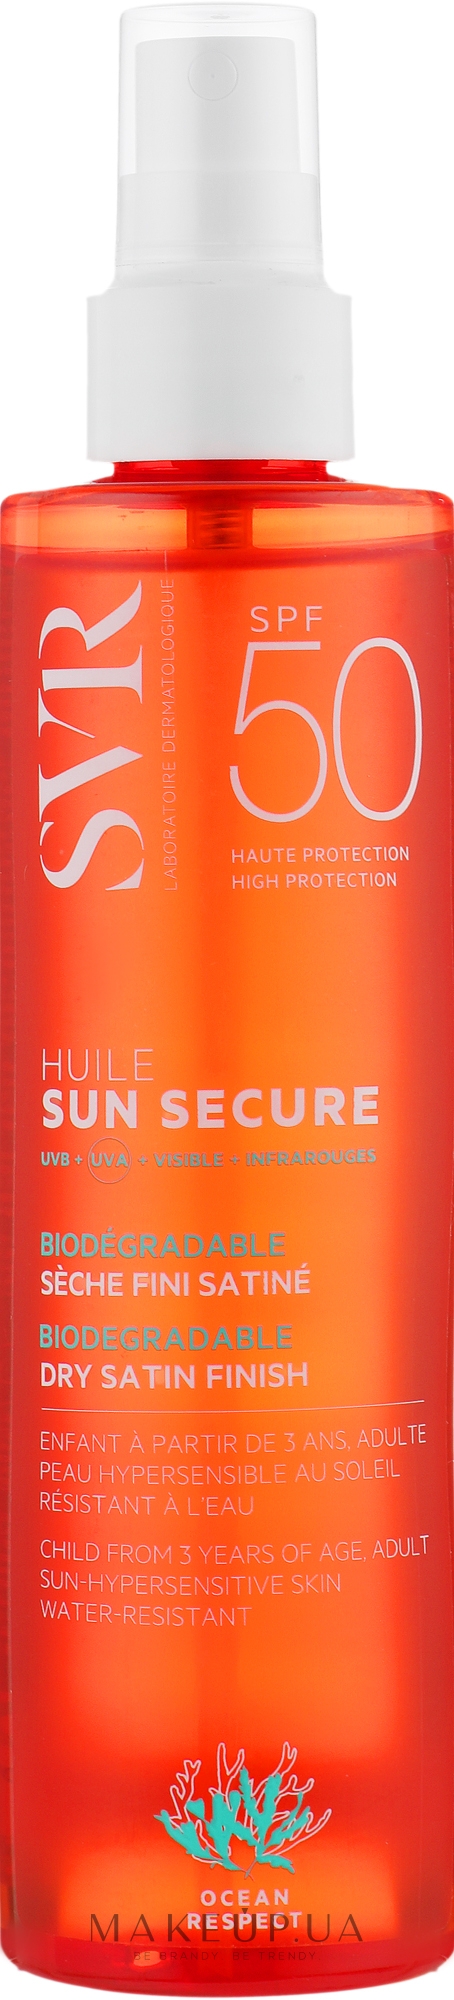 Сонцезахисна олія для тіла - SVR Sun Secure Biodegradable Spf50 — фото 200ml